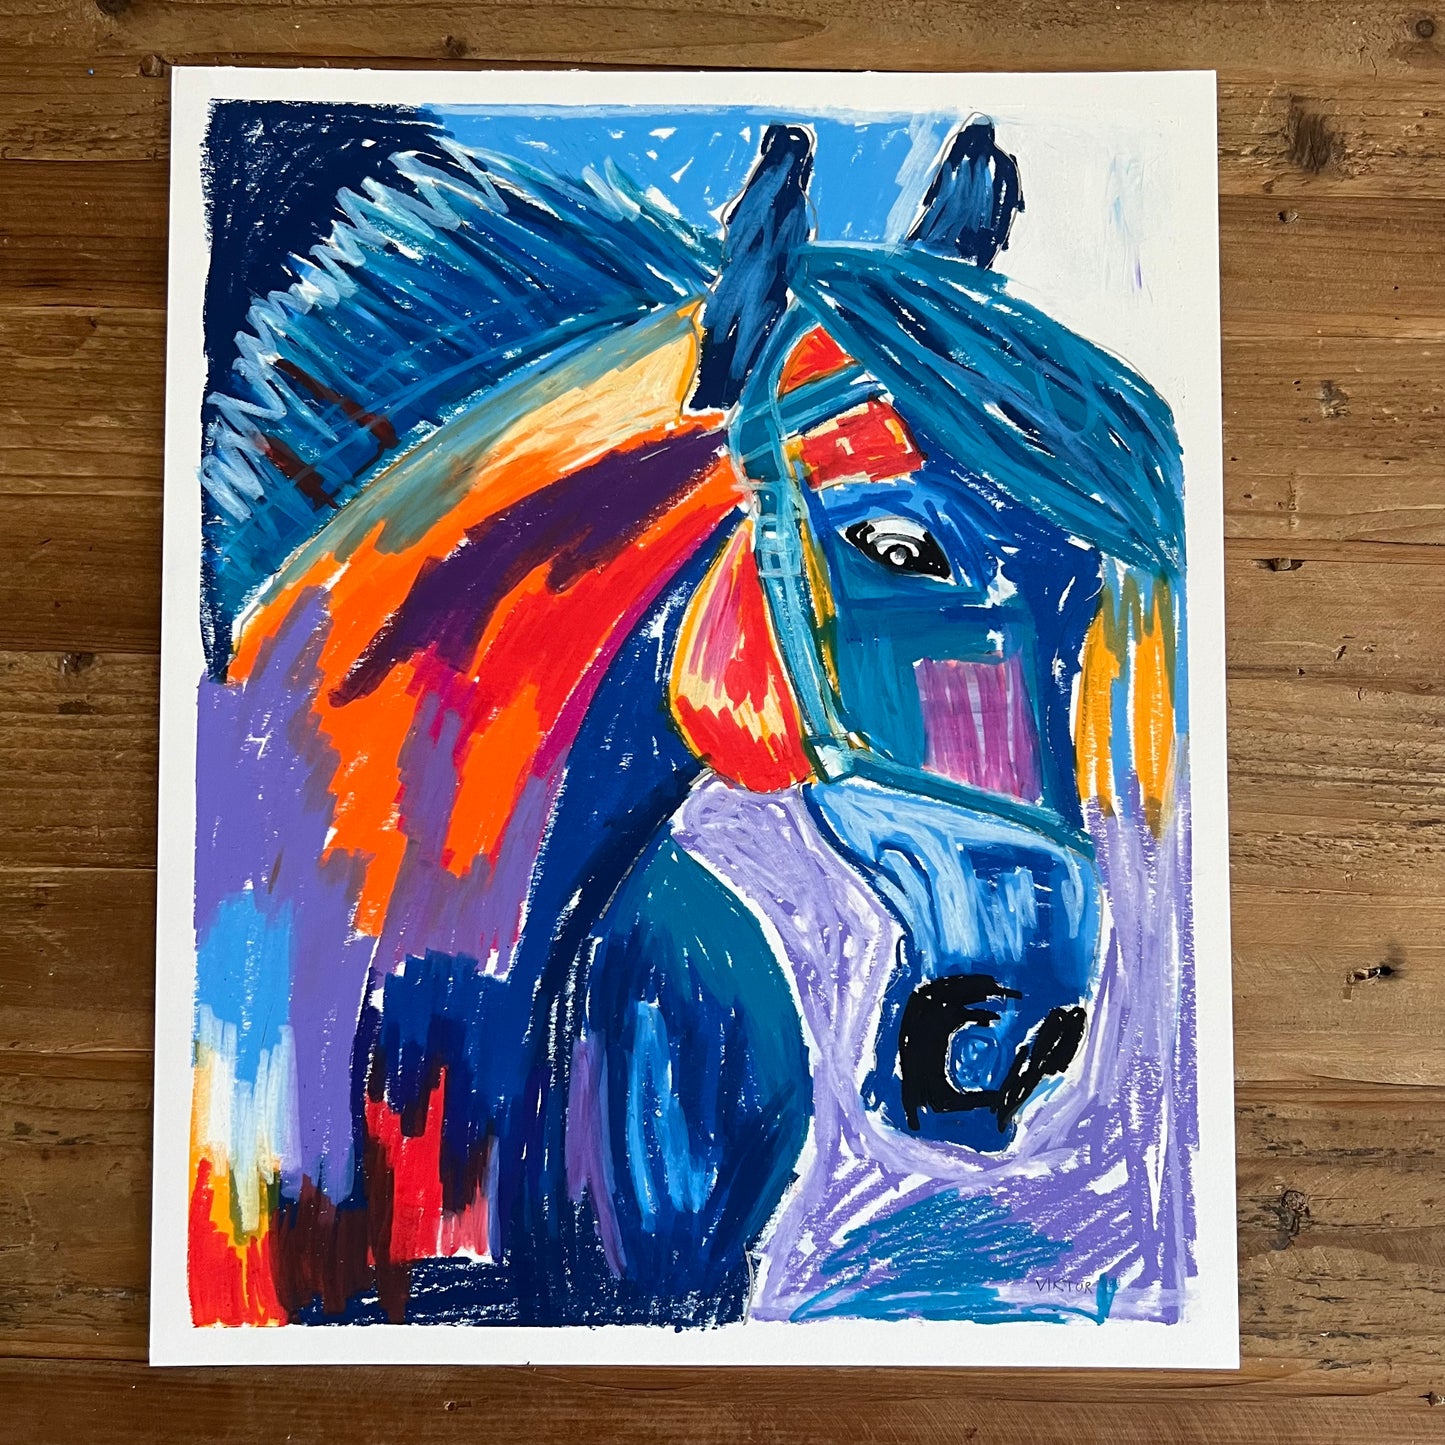 The Blue Horse - ORIGINAL  14x17”